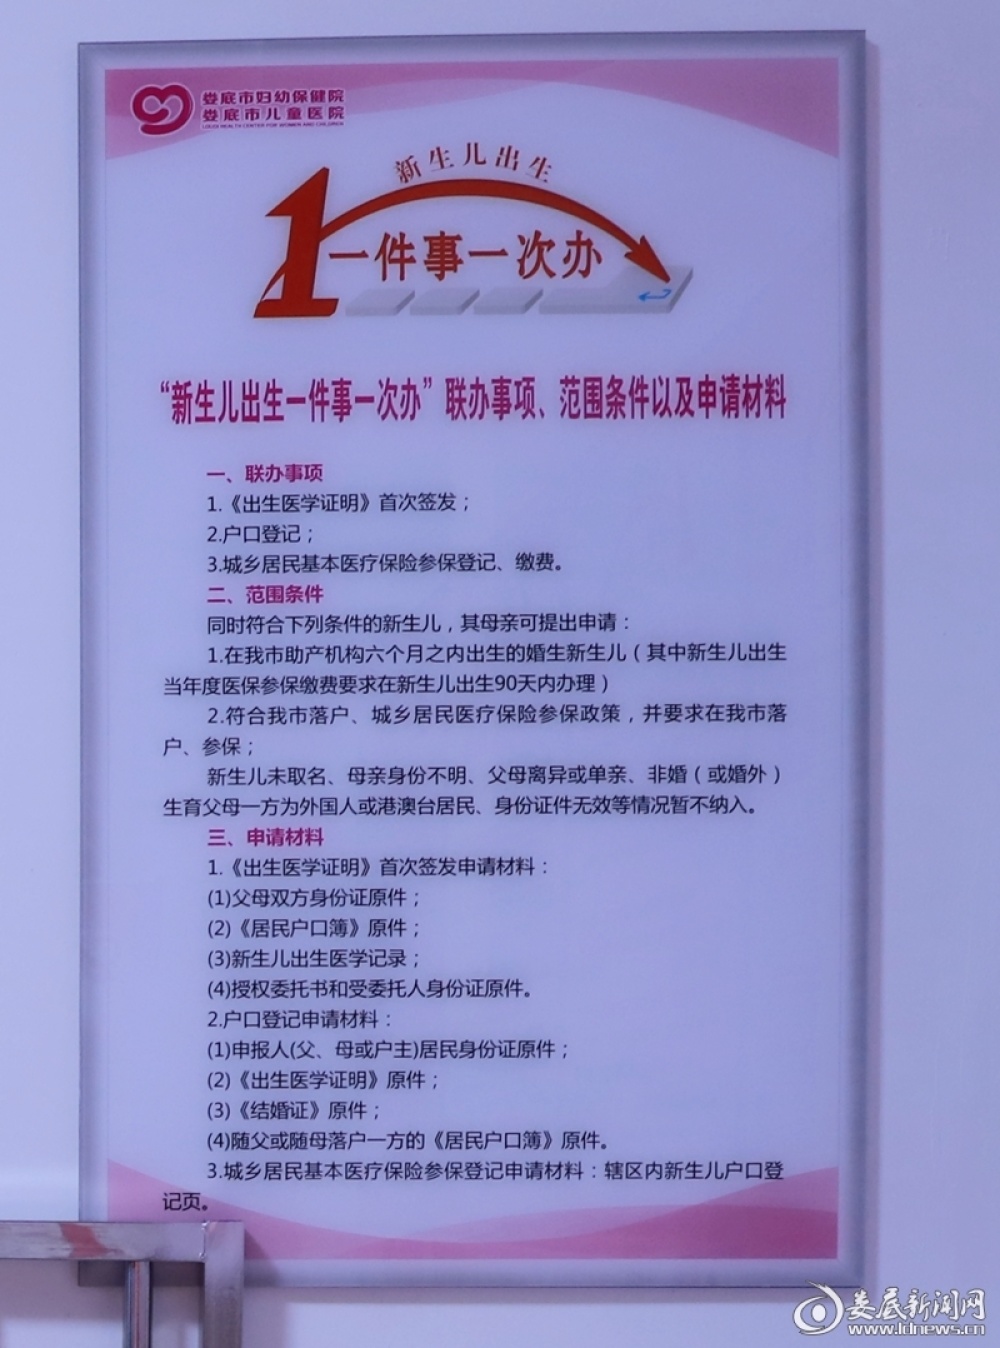 包含北京市海淀妇幼保健院专家跑腿代预约，在线客服为您解答的词条